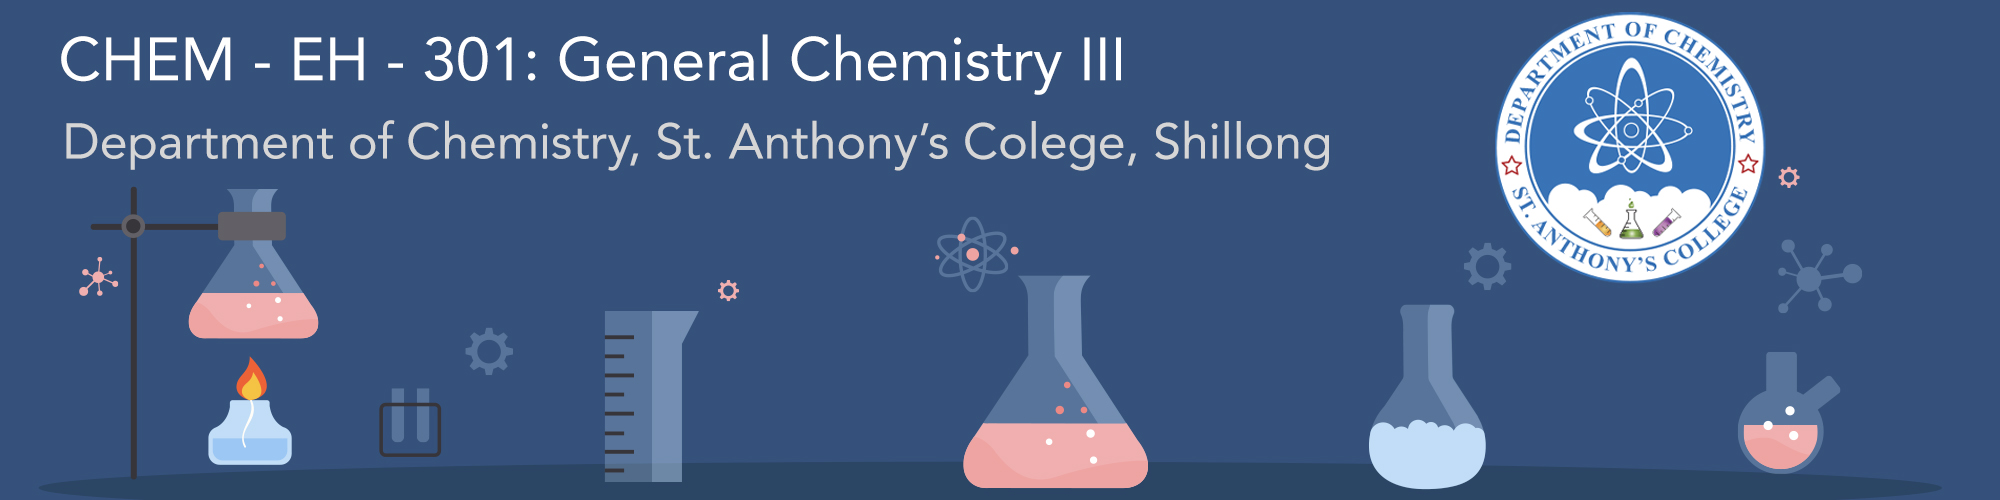 General Chemistry - III